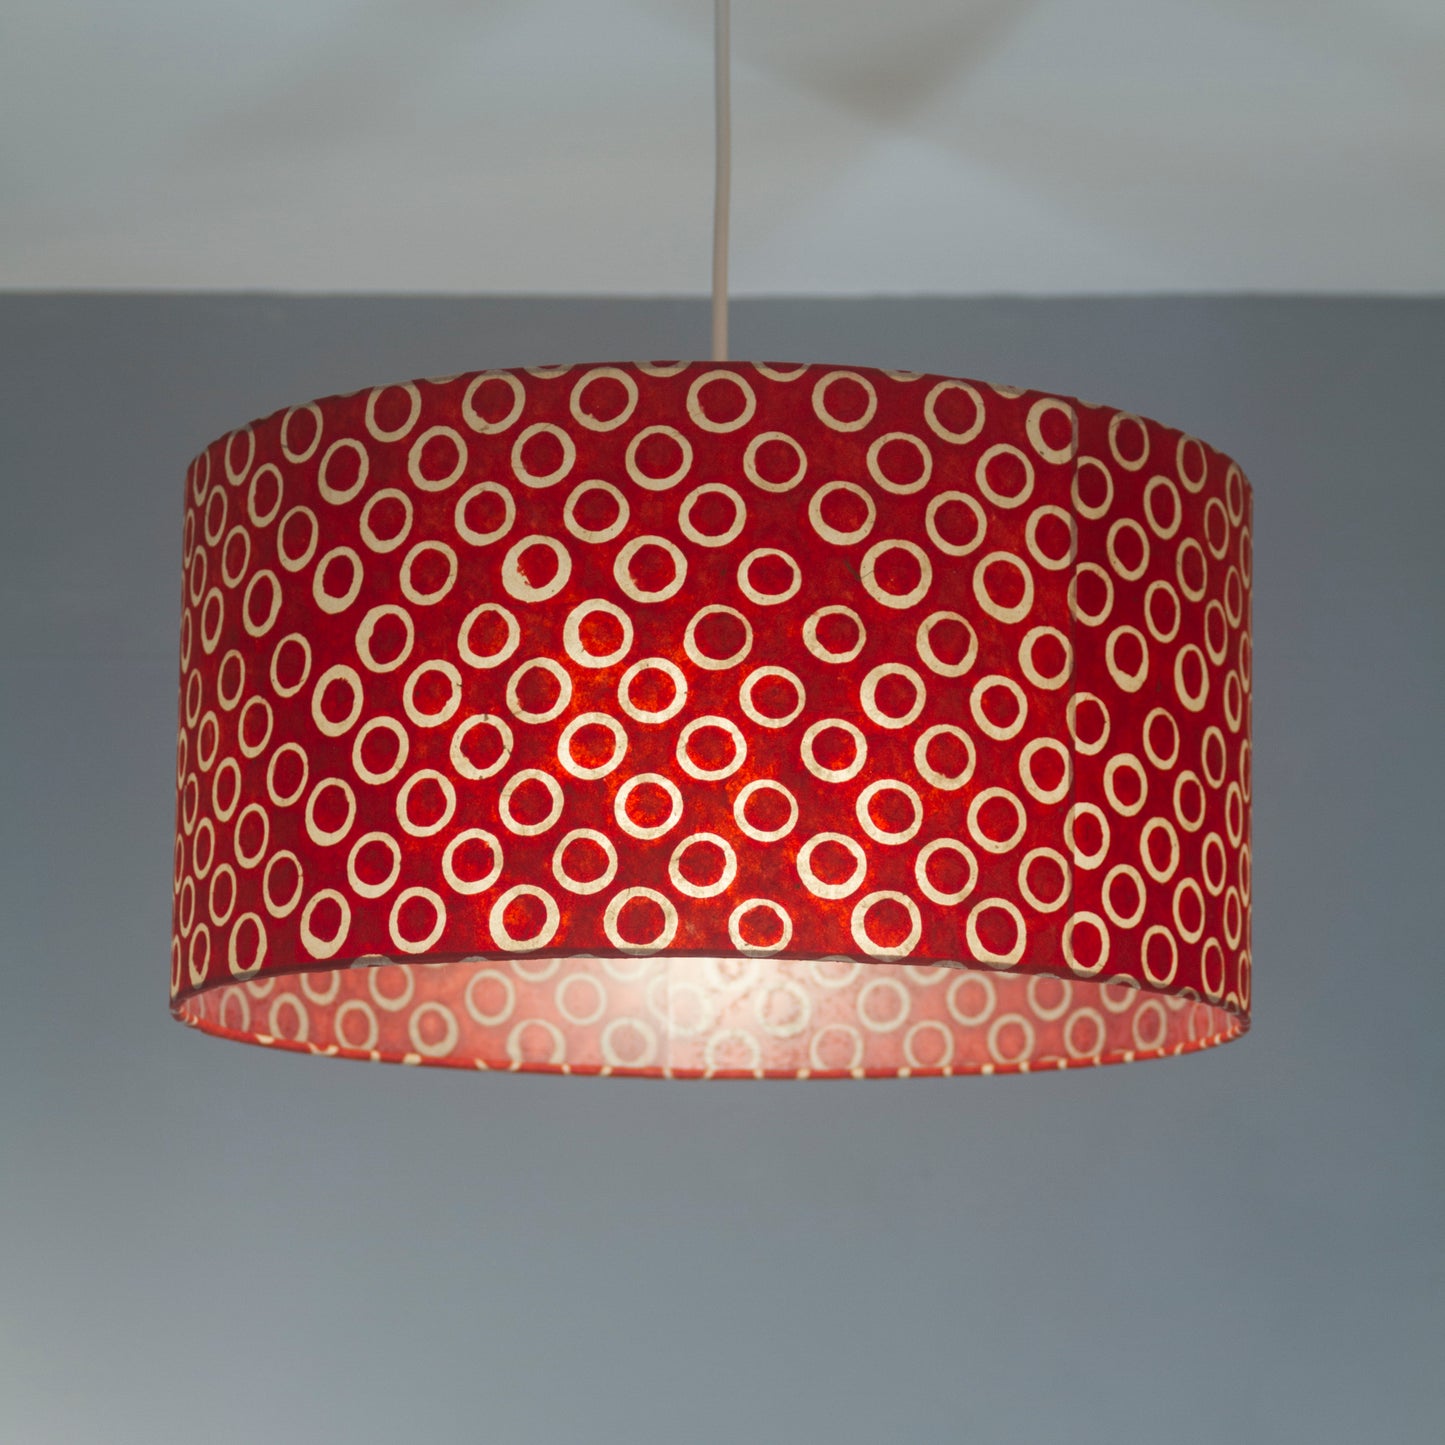 Drum Lamp Shade - P83 - Batik Red Circles, 25cm x 25cm